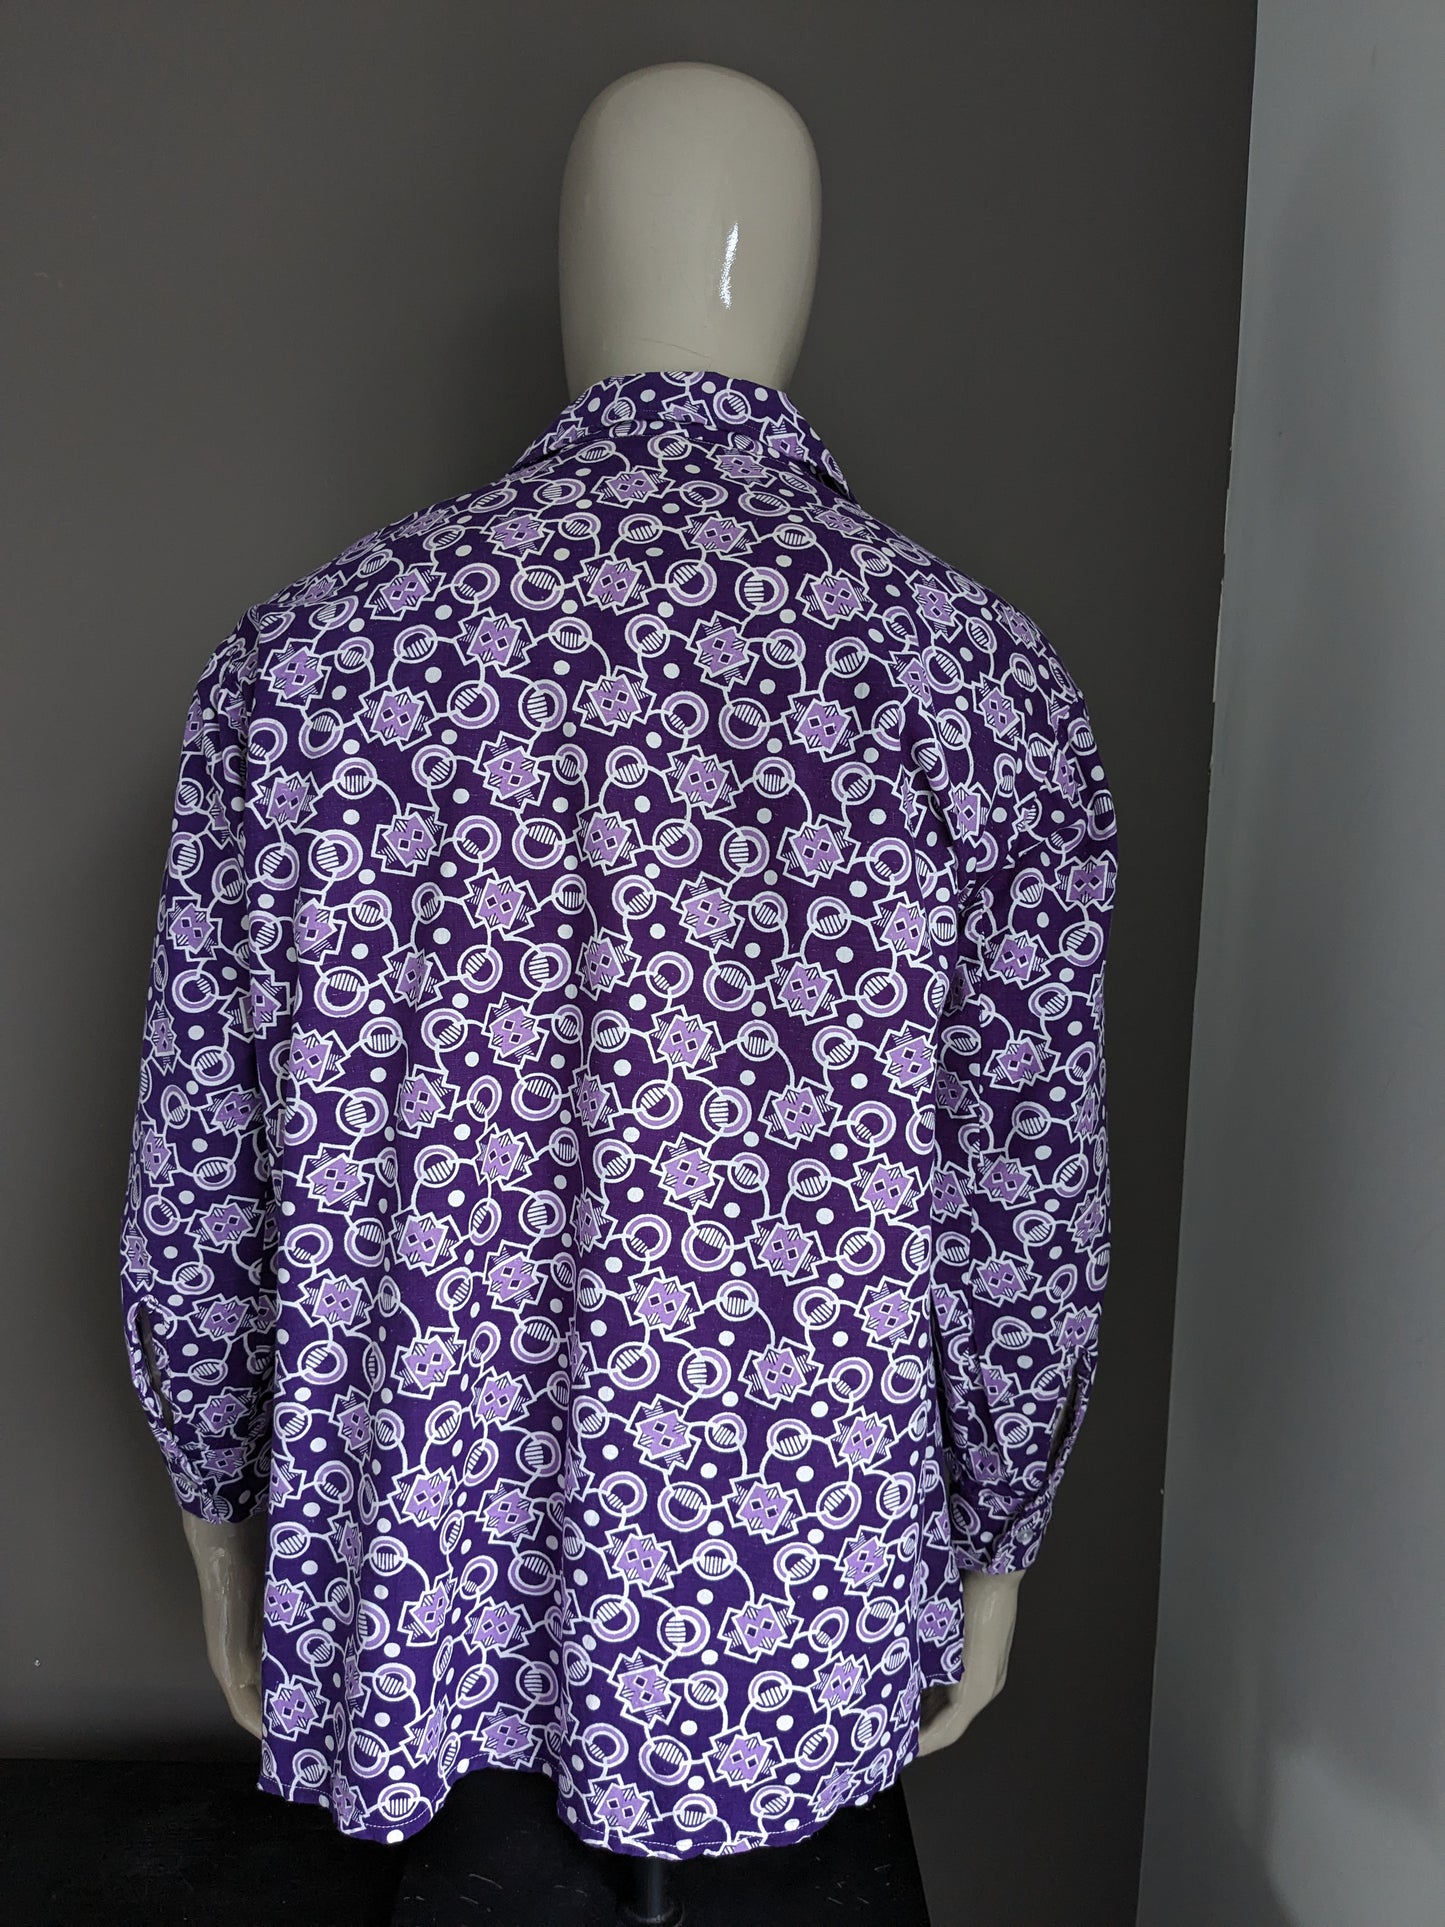 Camisa de loto vintage. Estampado blanco púrpura. Tamaño 2xl / xxl - 3xl / xxxl.